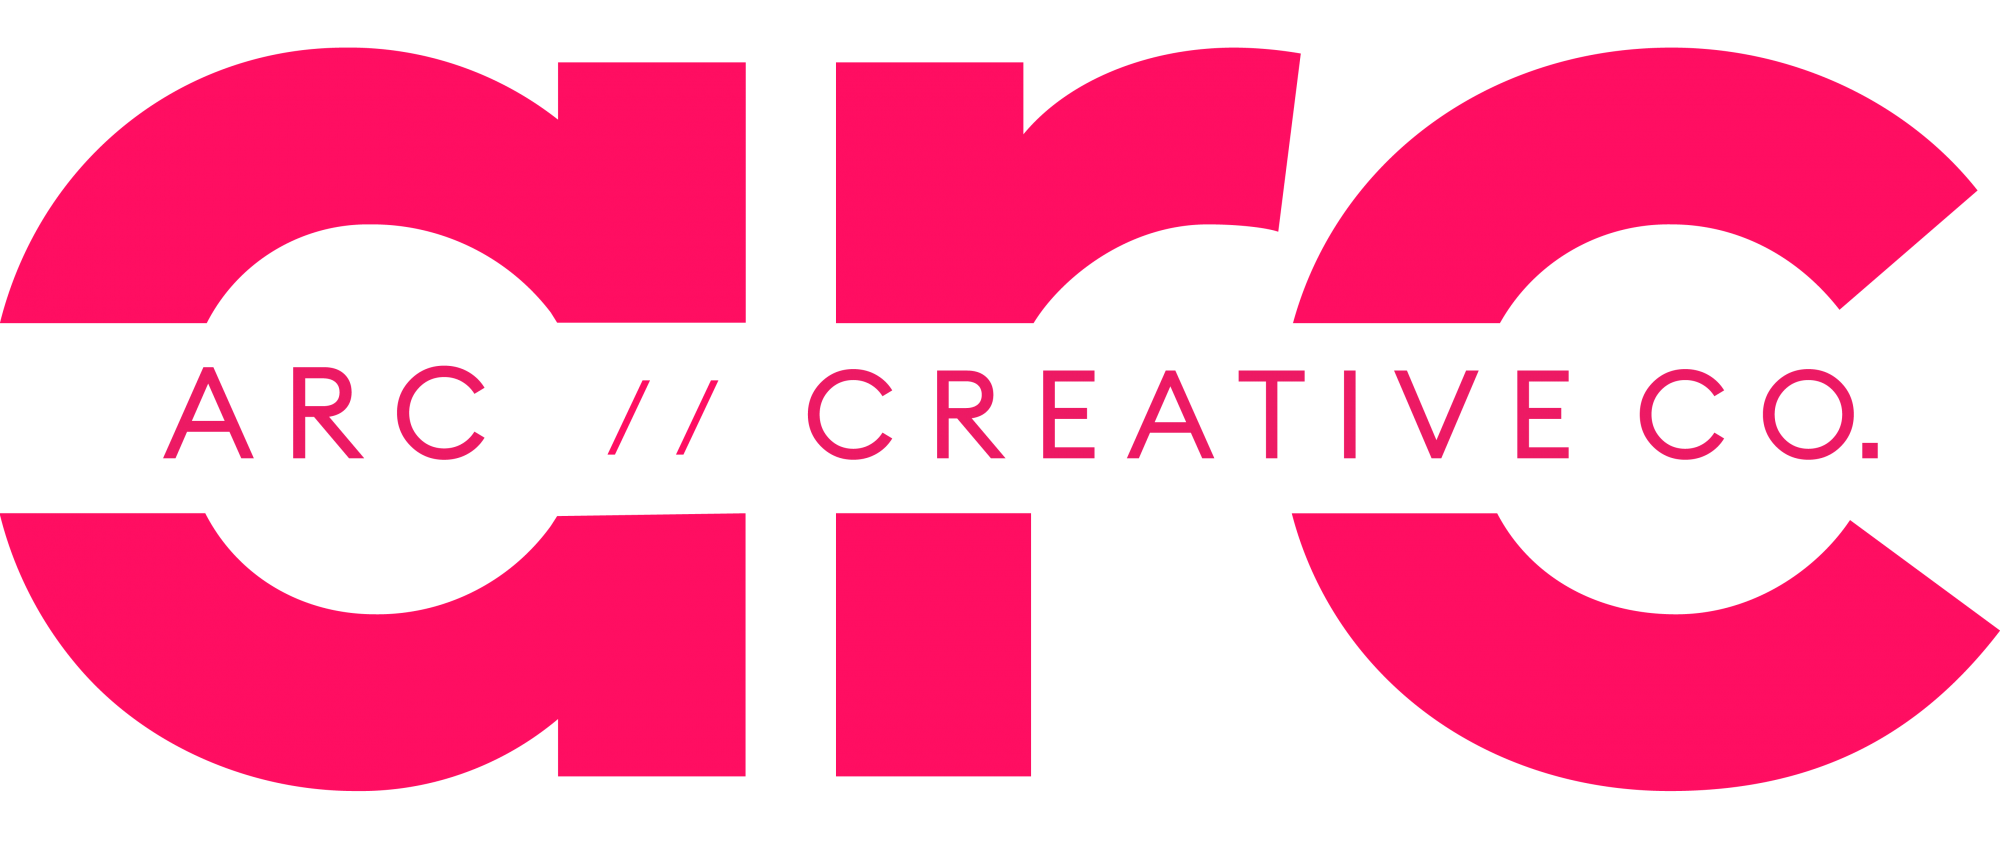 ARC Creative Co. Jobs